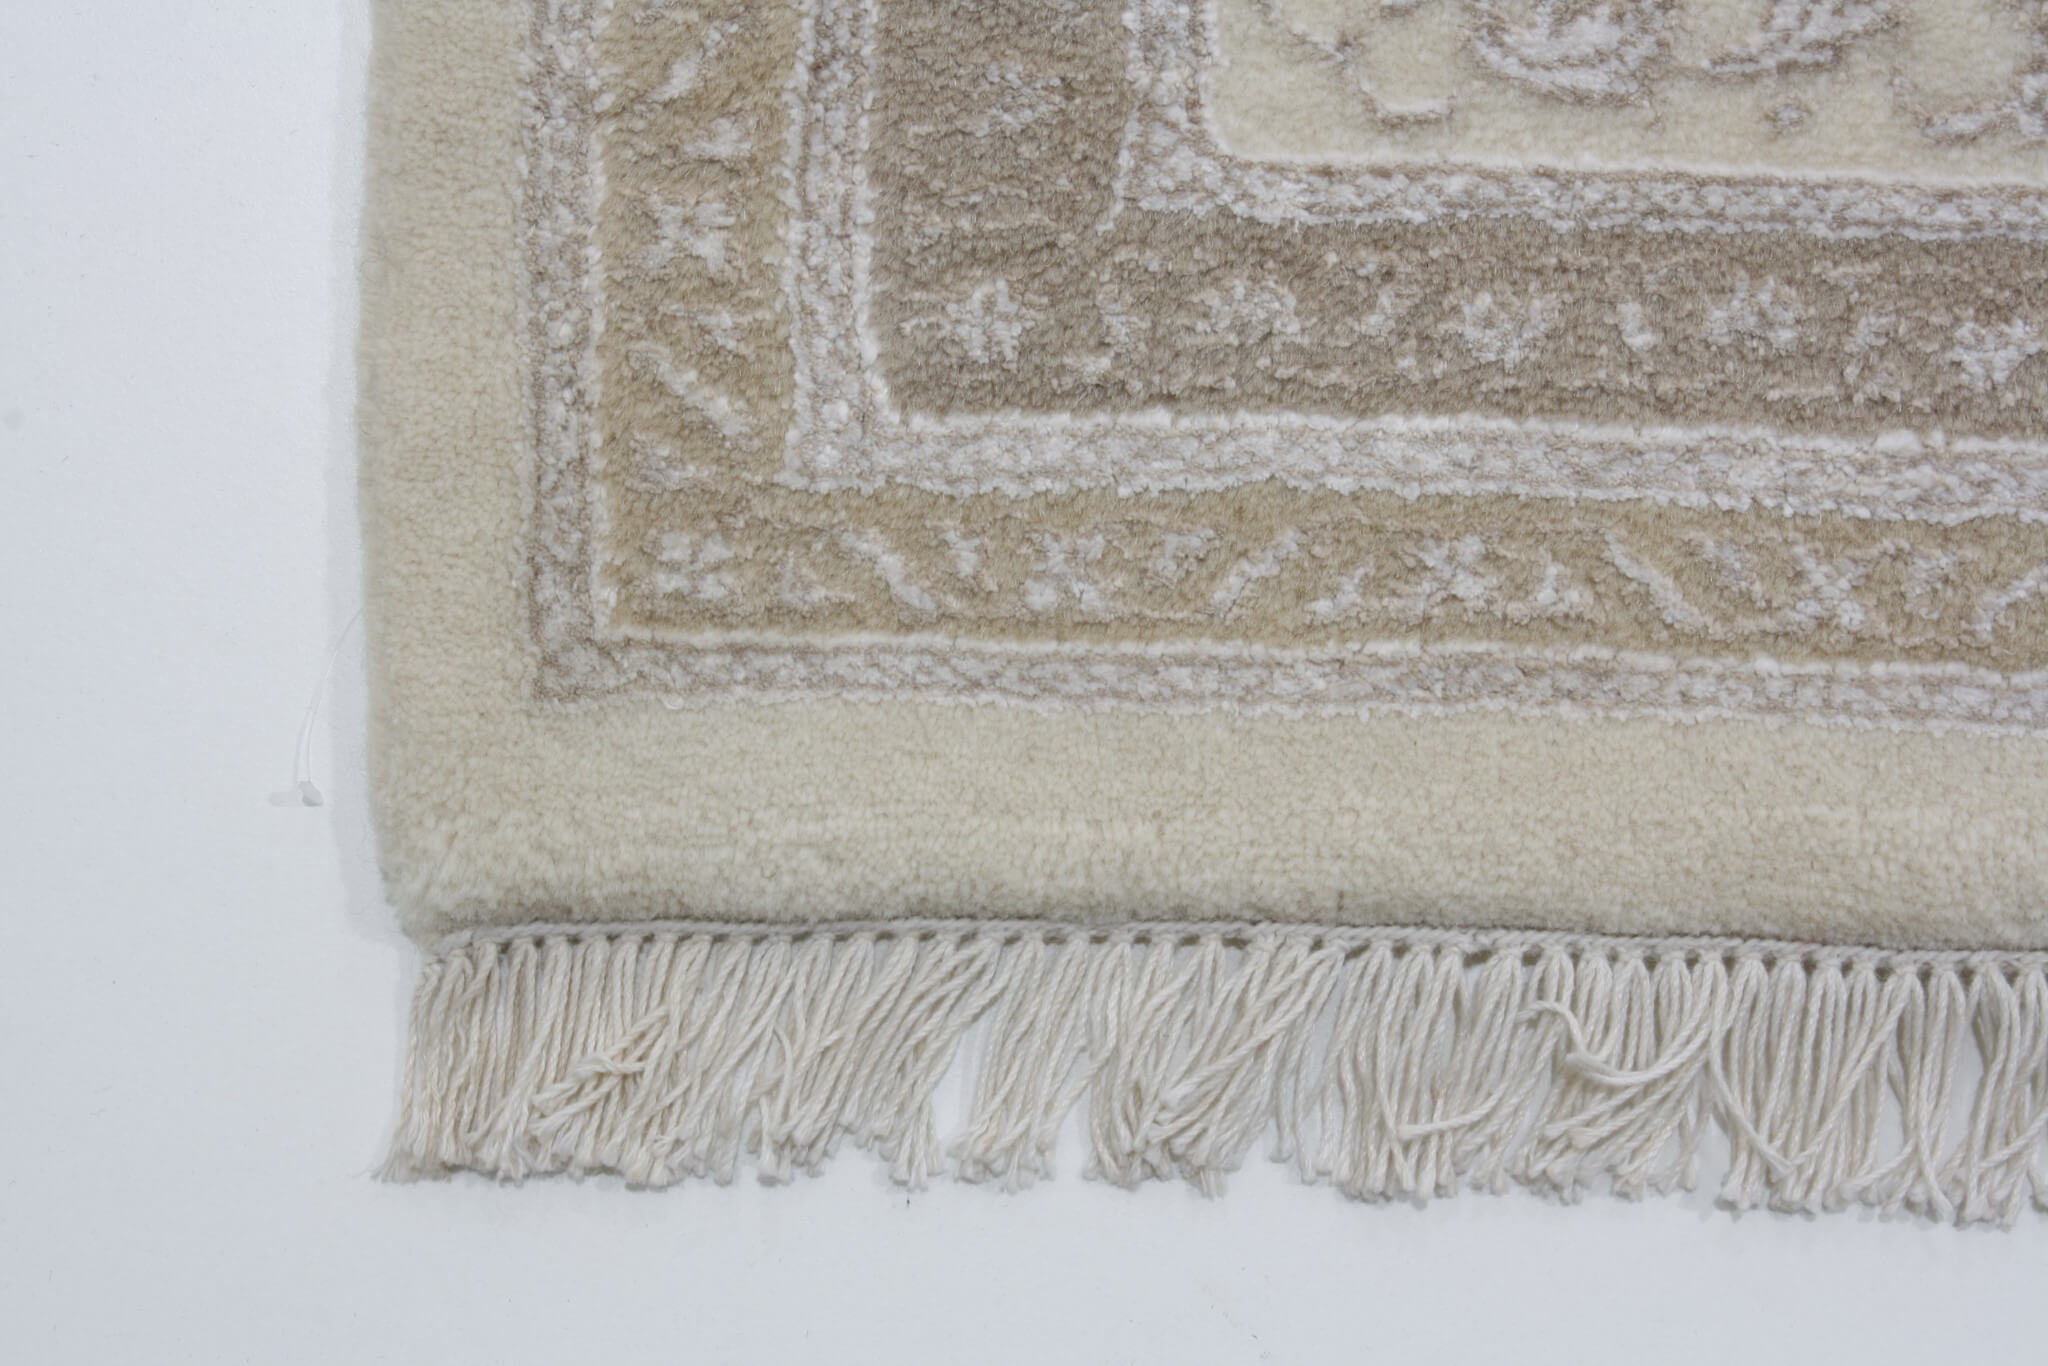 Orientální koberec Tabriz Mahi Royal